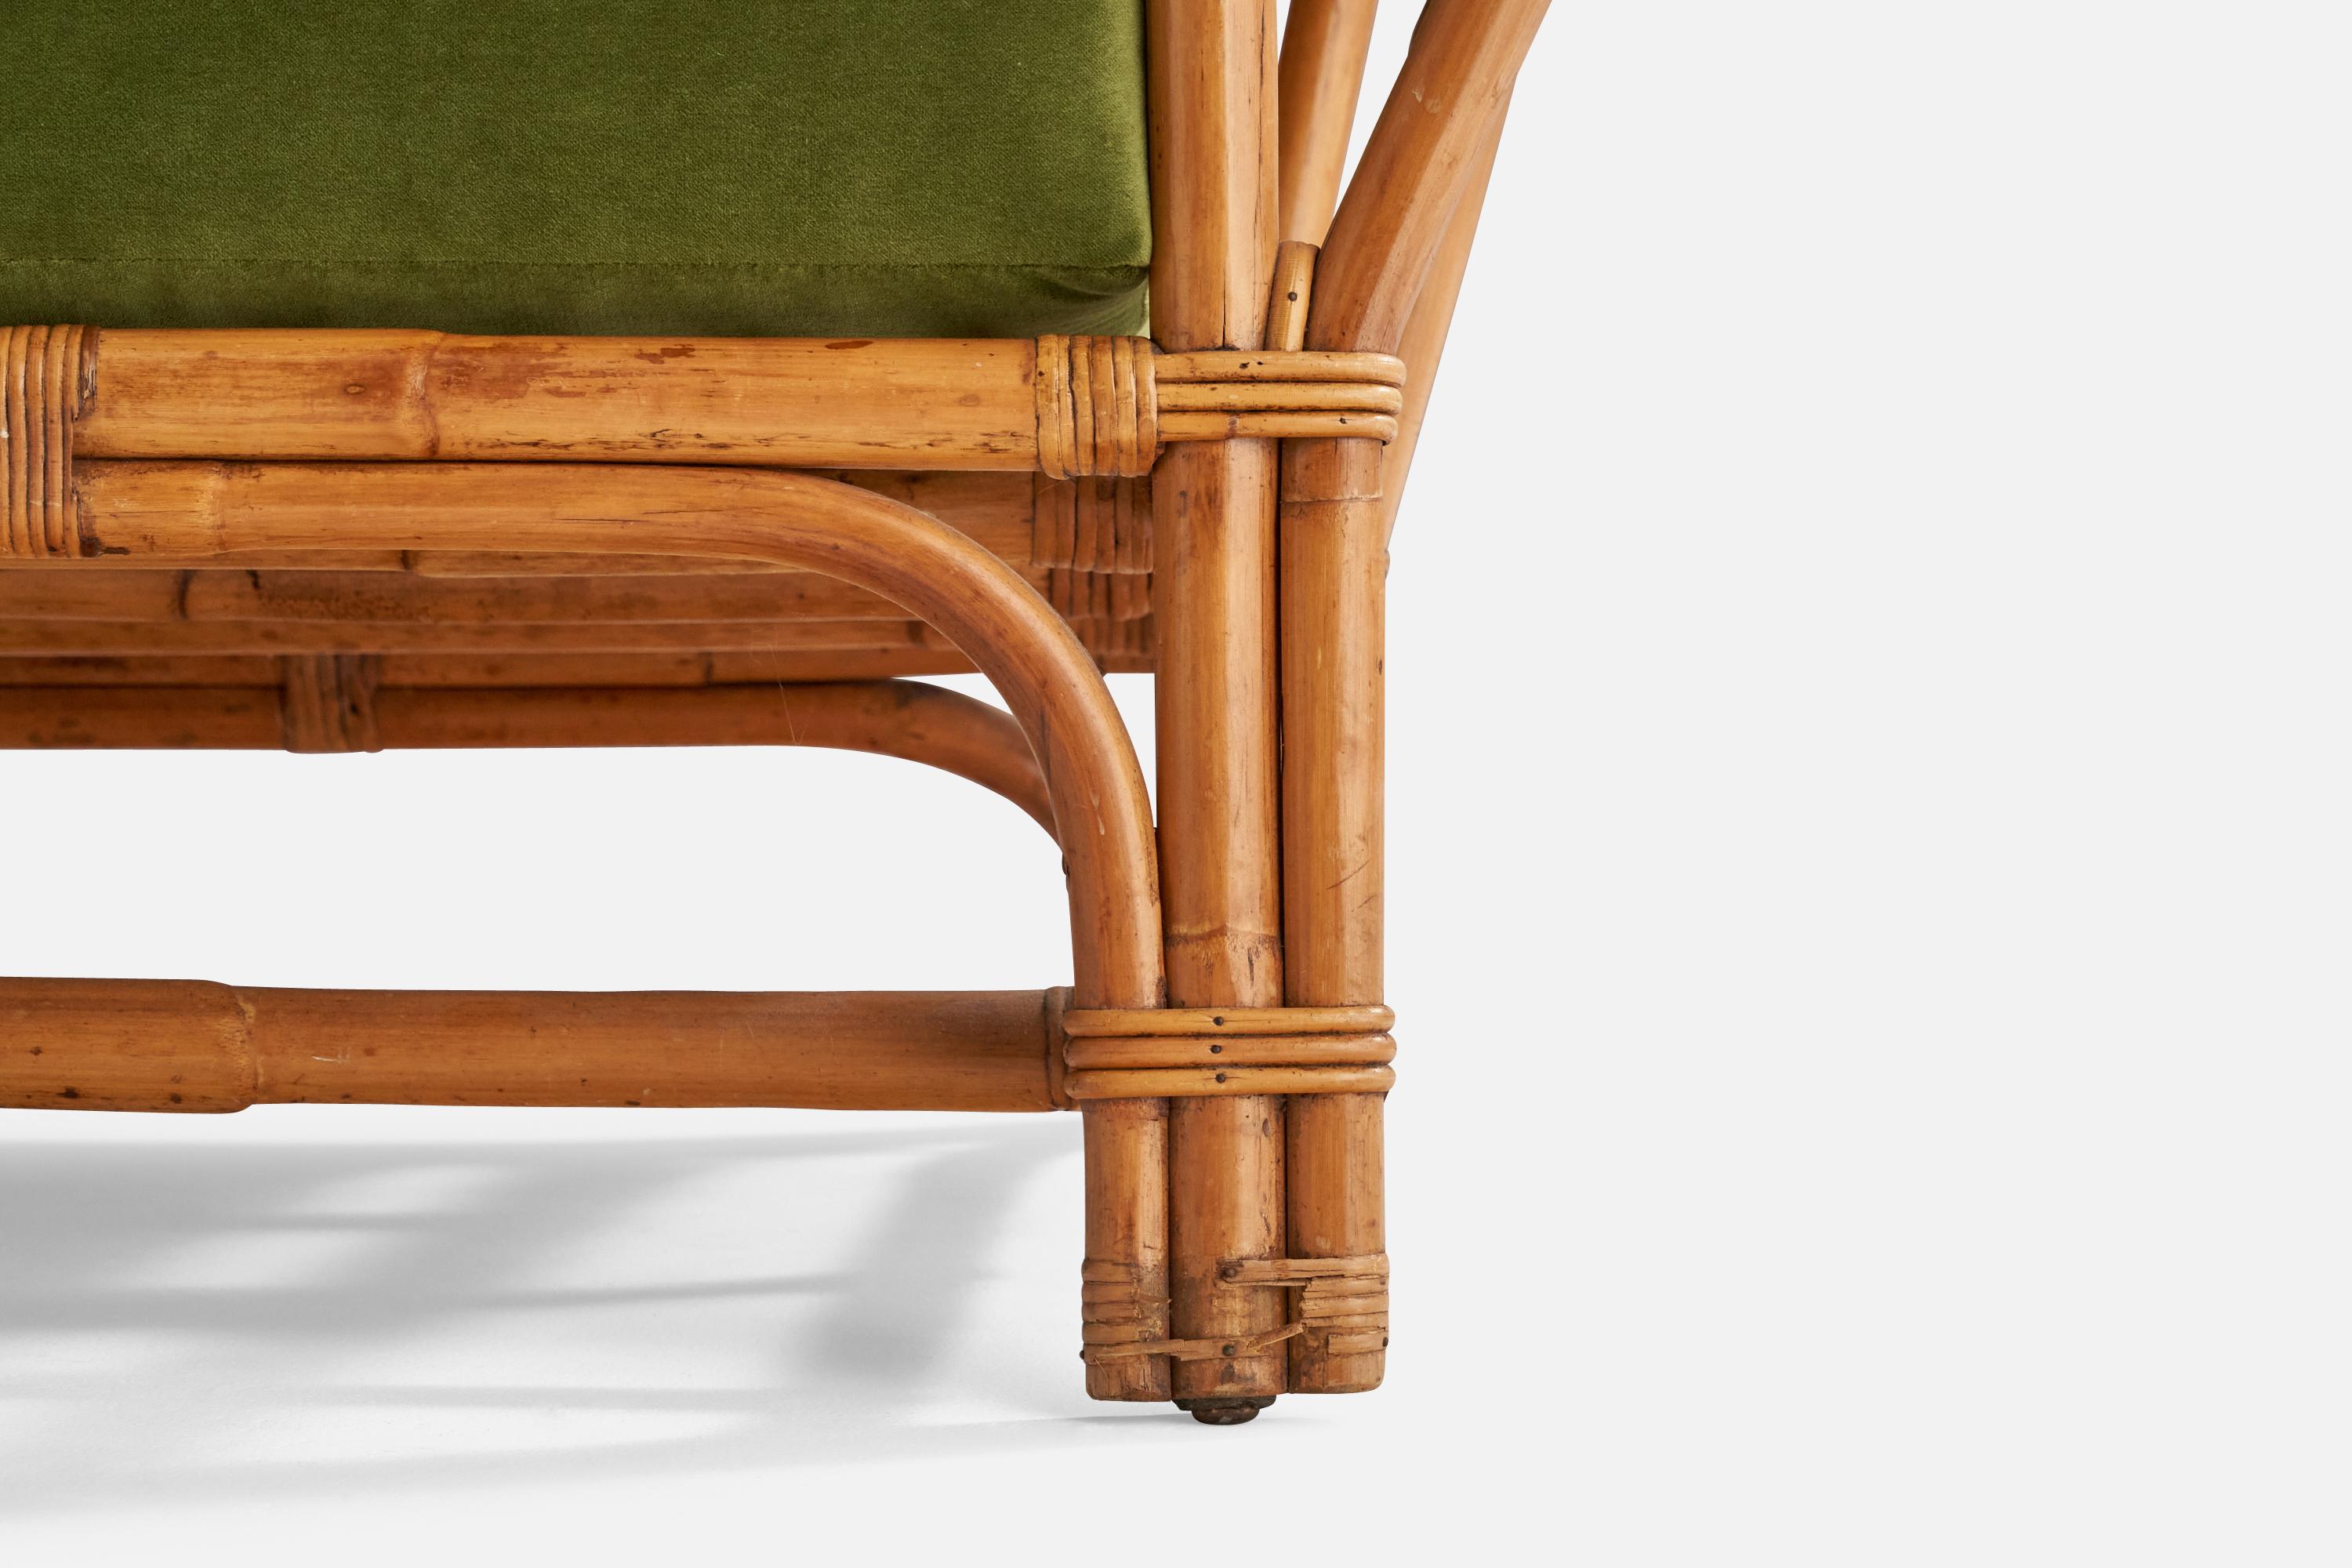 American Designer, Lounge Chair, Maple, Velvet, Bamboo, Rattan, USA, 1940s For Sale 4